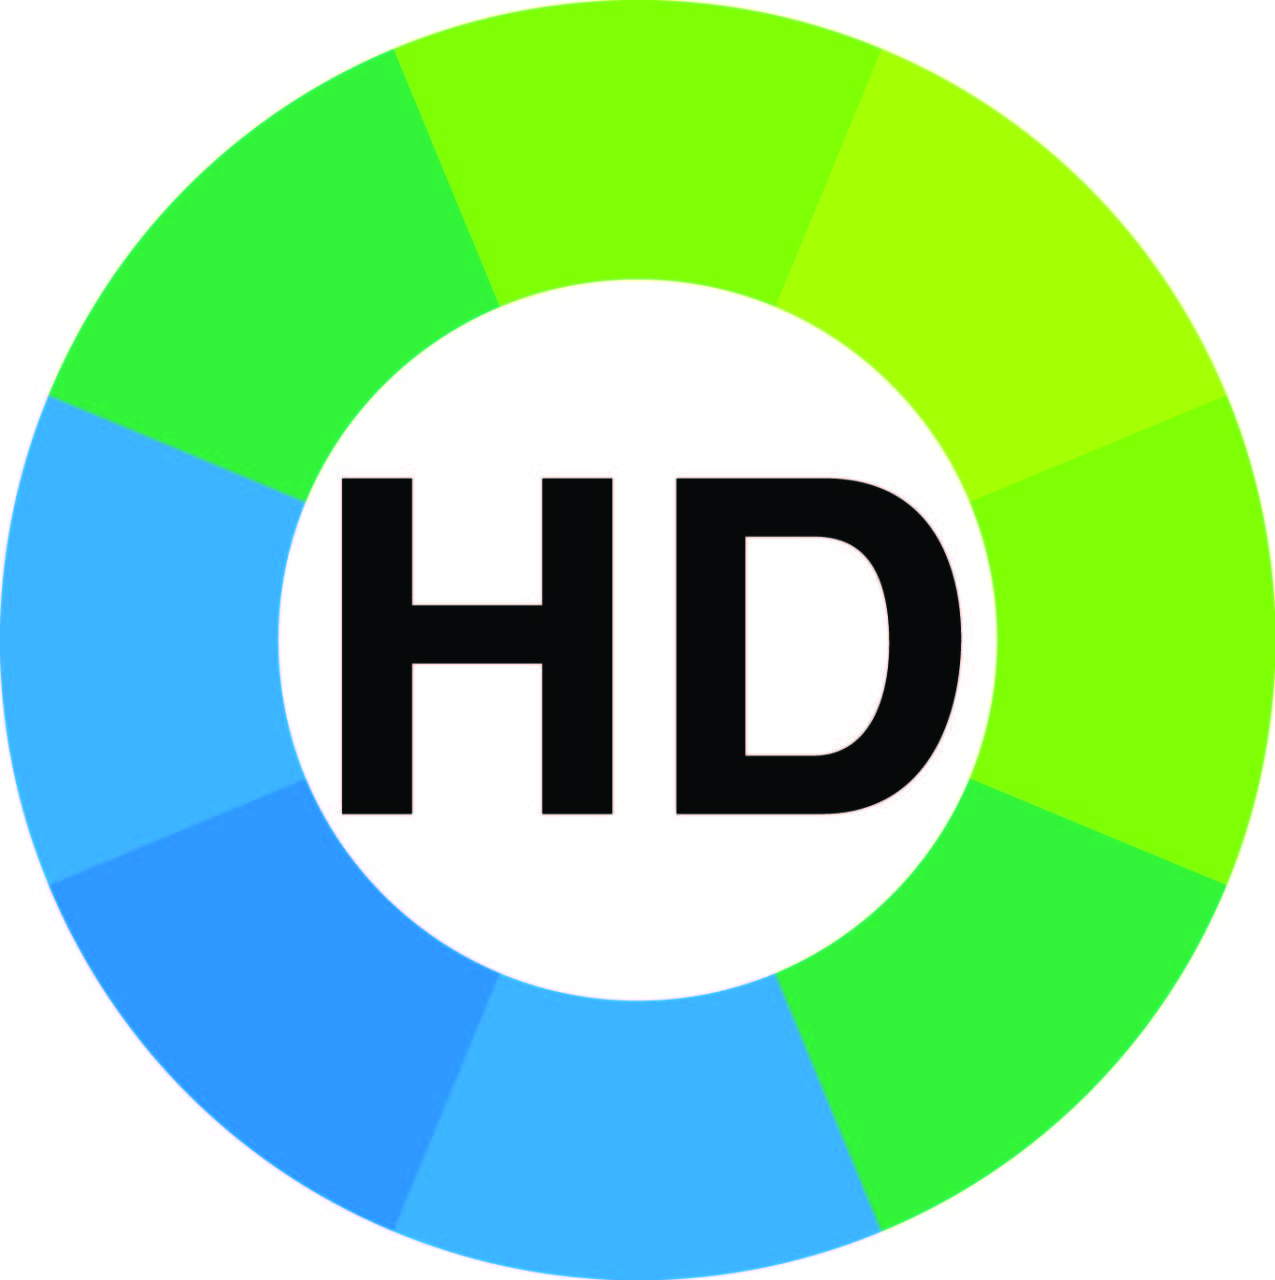 В Азербайджане начал вещание новый телеканал "МИР HD"